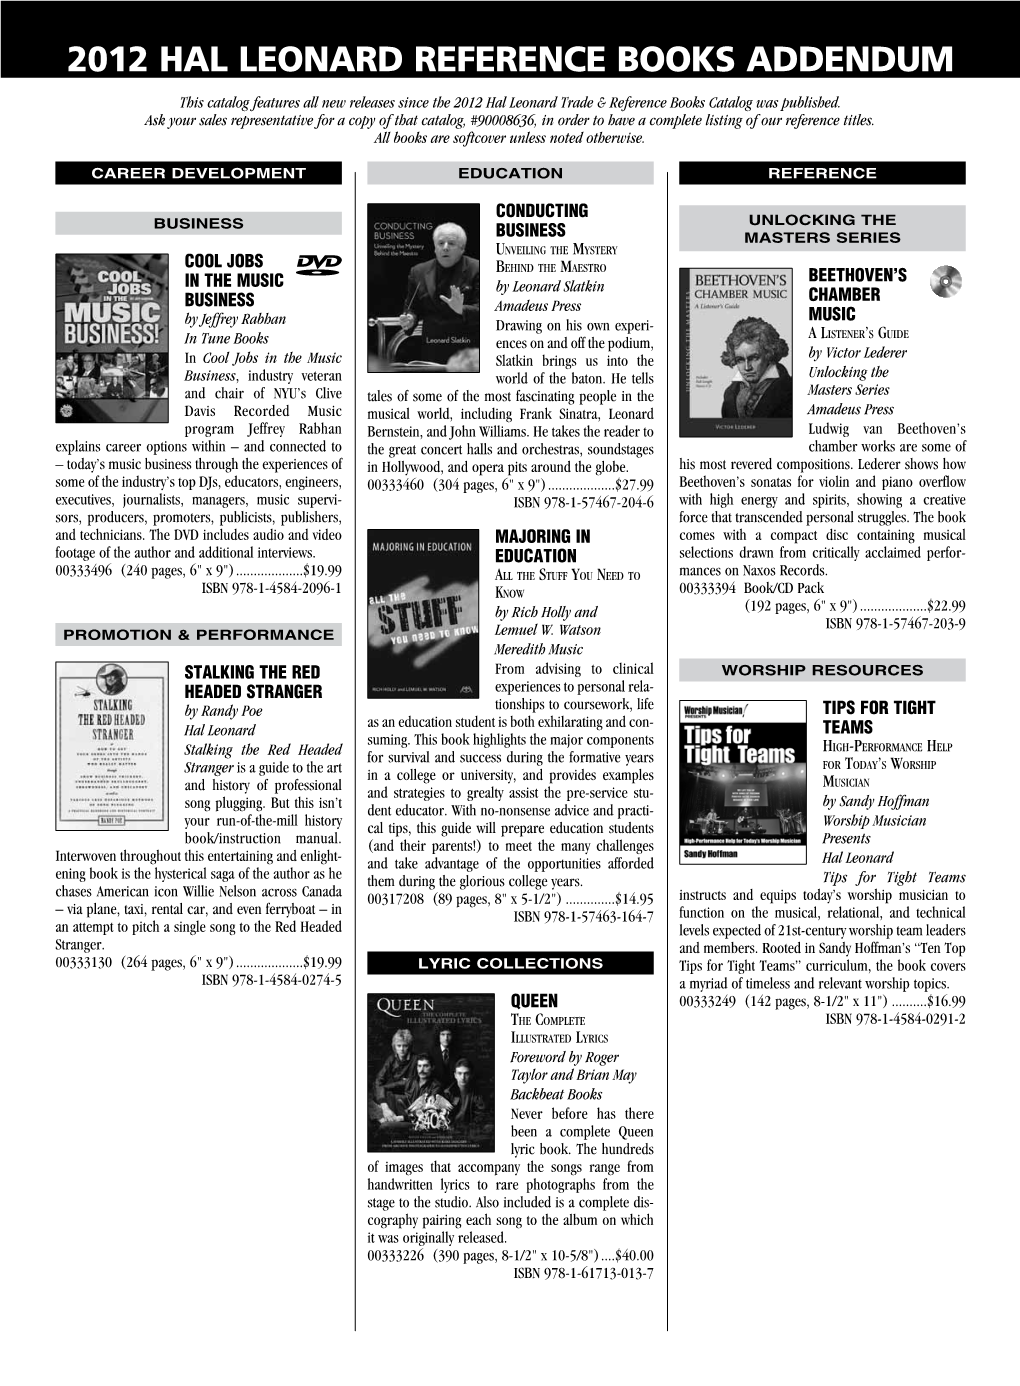 2012 Hal Leonard Reference Books Addendum